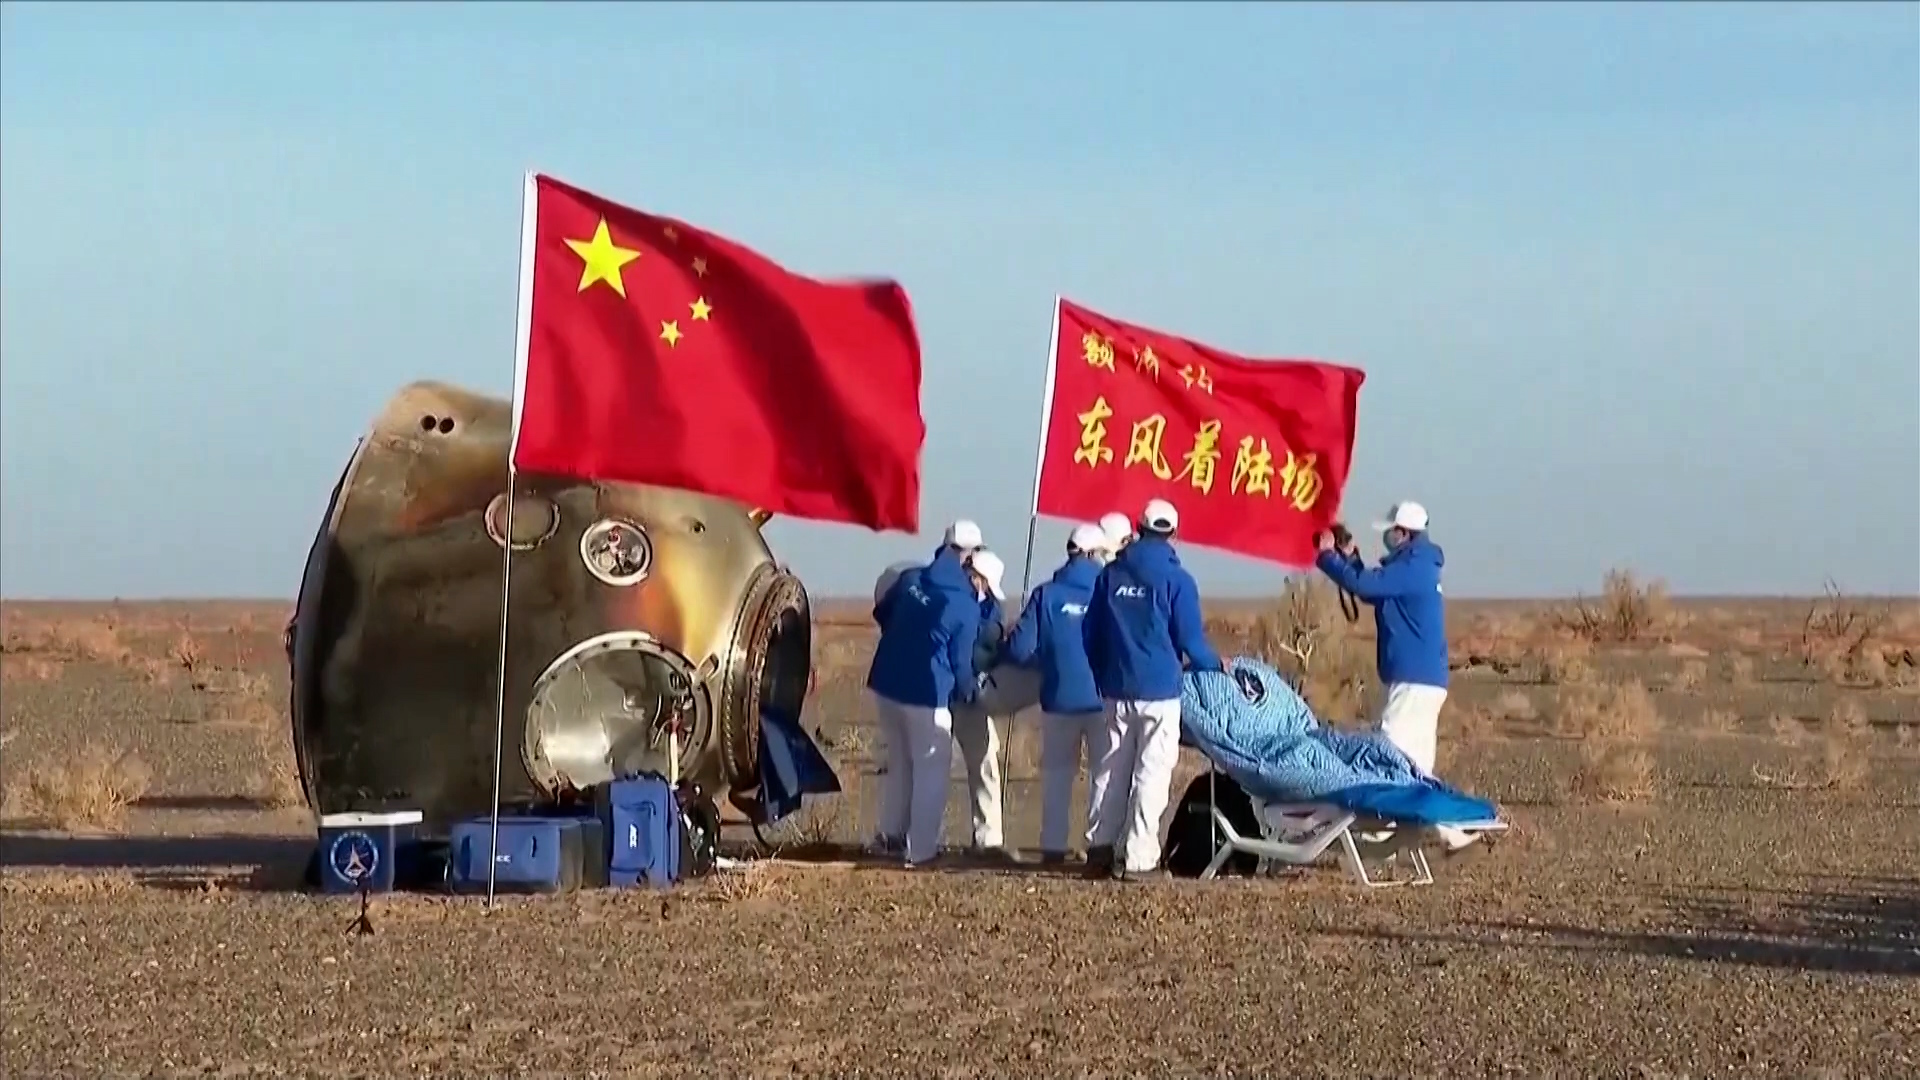 Προσγειώθηκε η κάψουλα επανεισόδου της κινεζικής αποστολής στο διαστημικό σταθμό Tiangong (video)